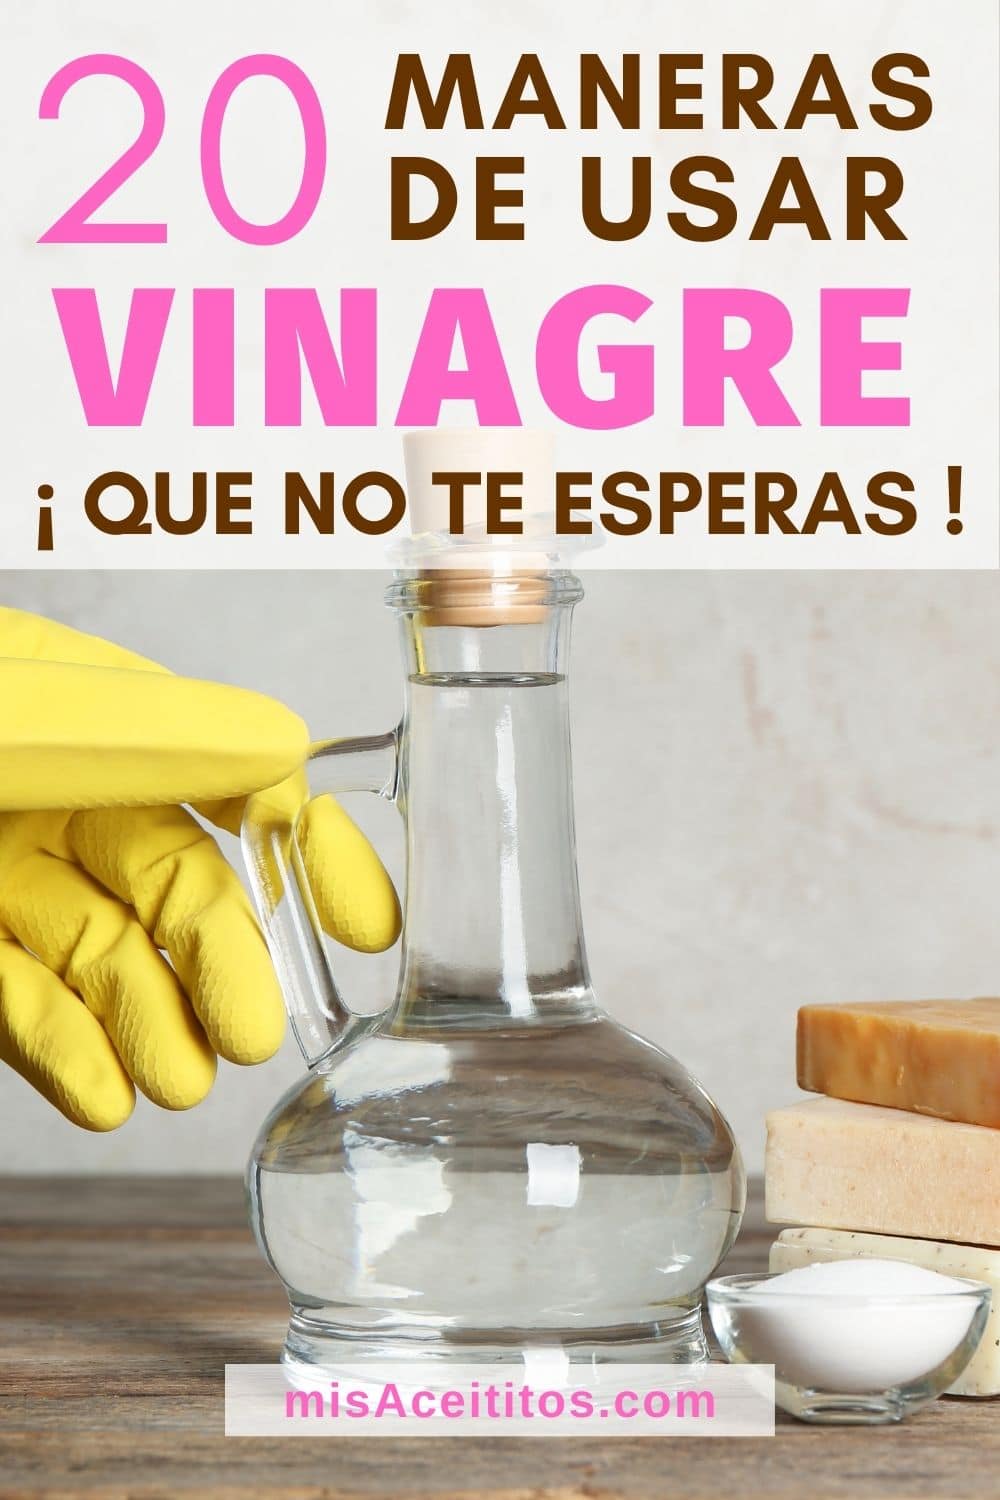 20 Usos del vinagre en tu hogar que seguro desconocias